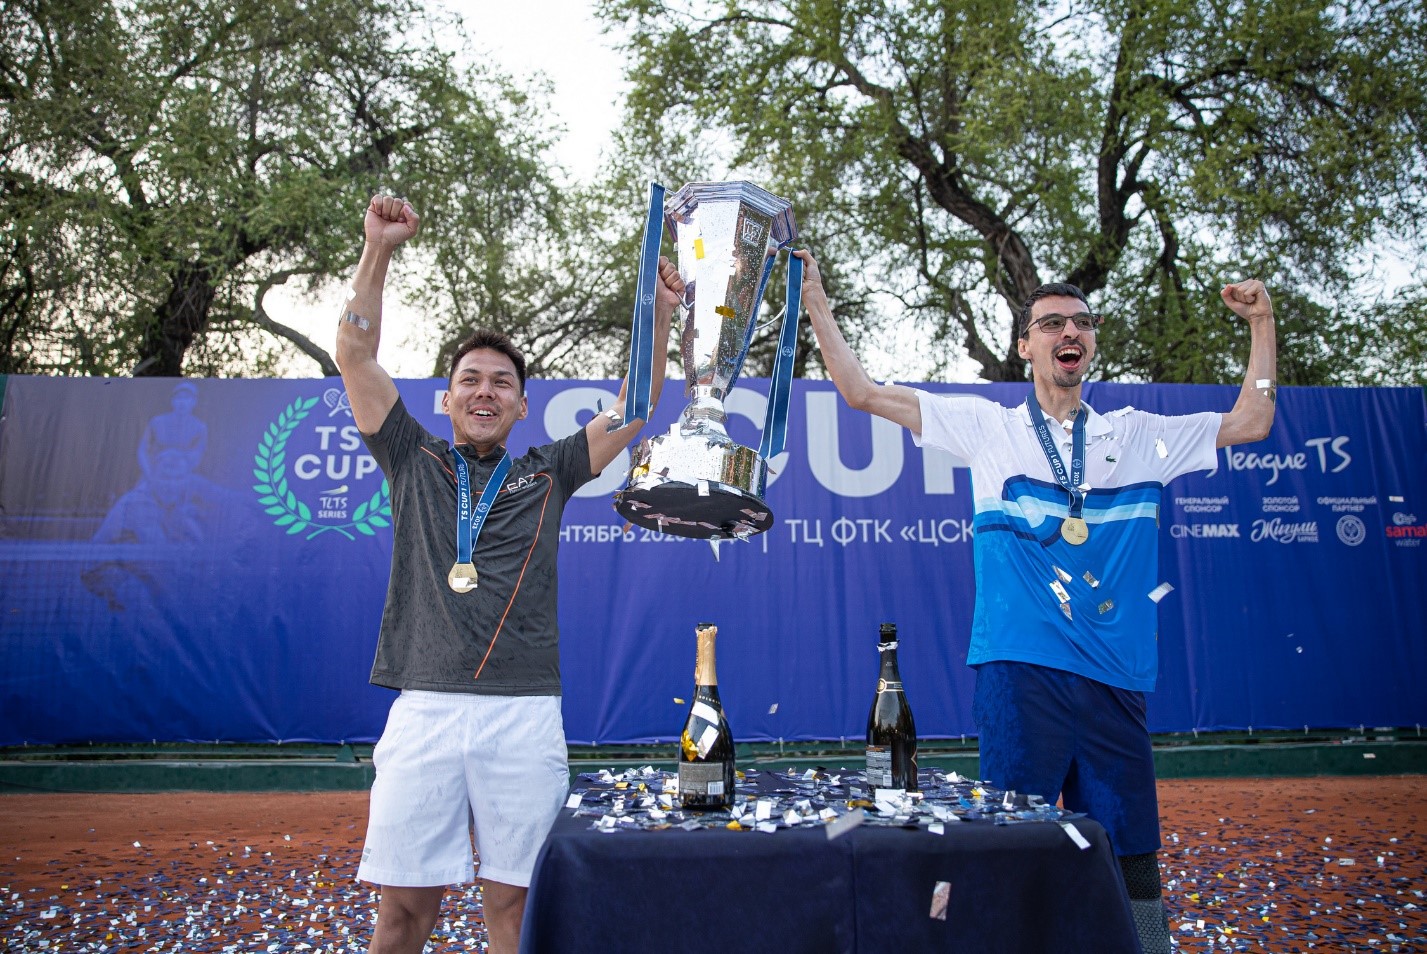 Теннисная Лига TS: кто стал победителем серии парных турниров?